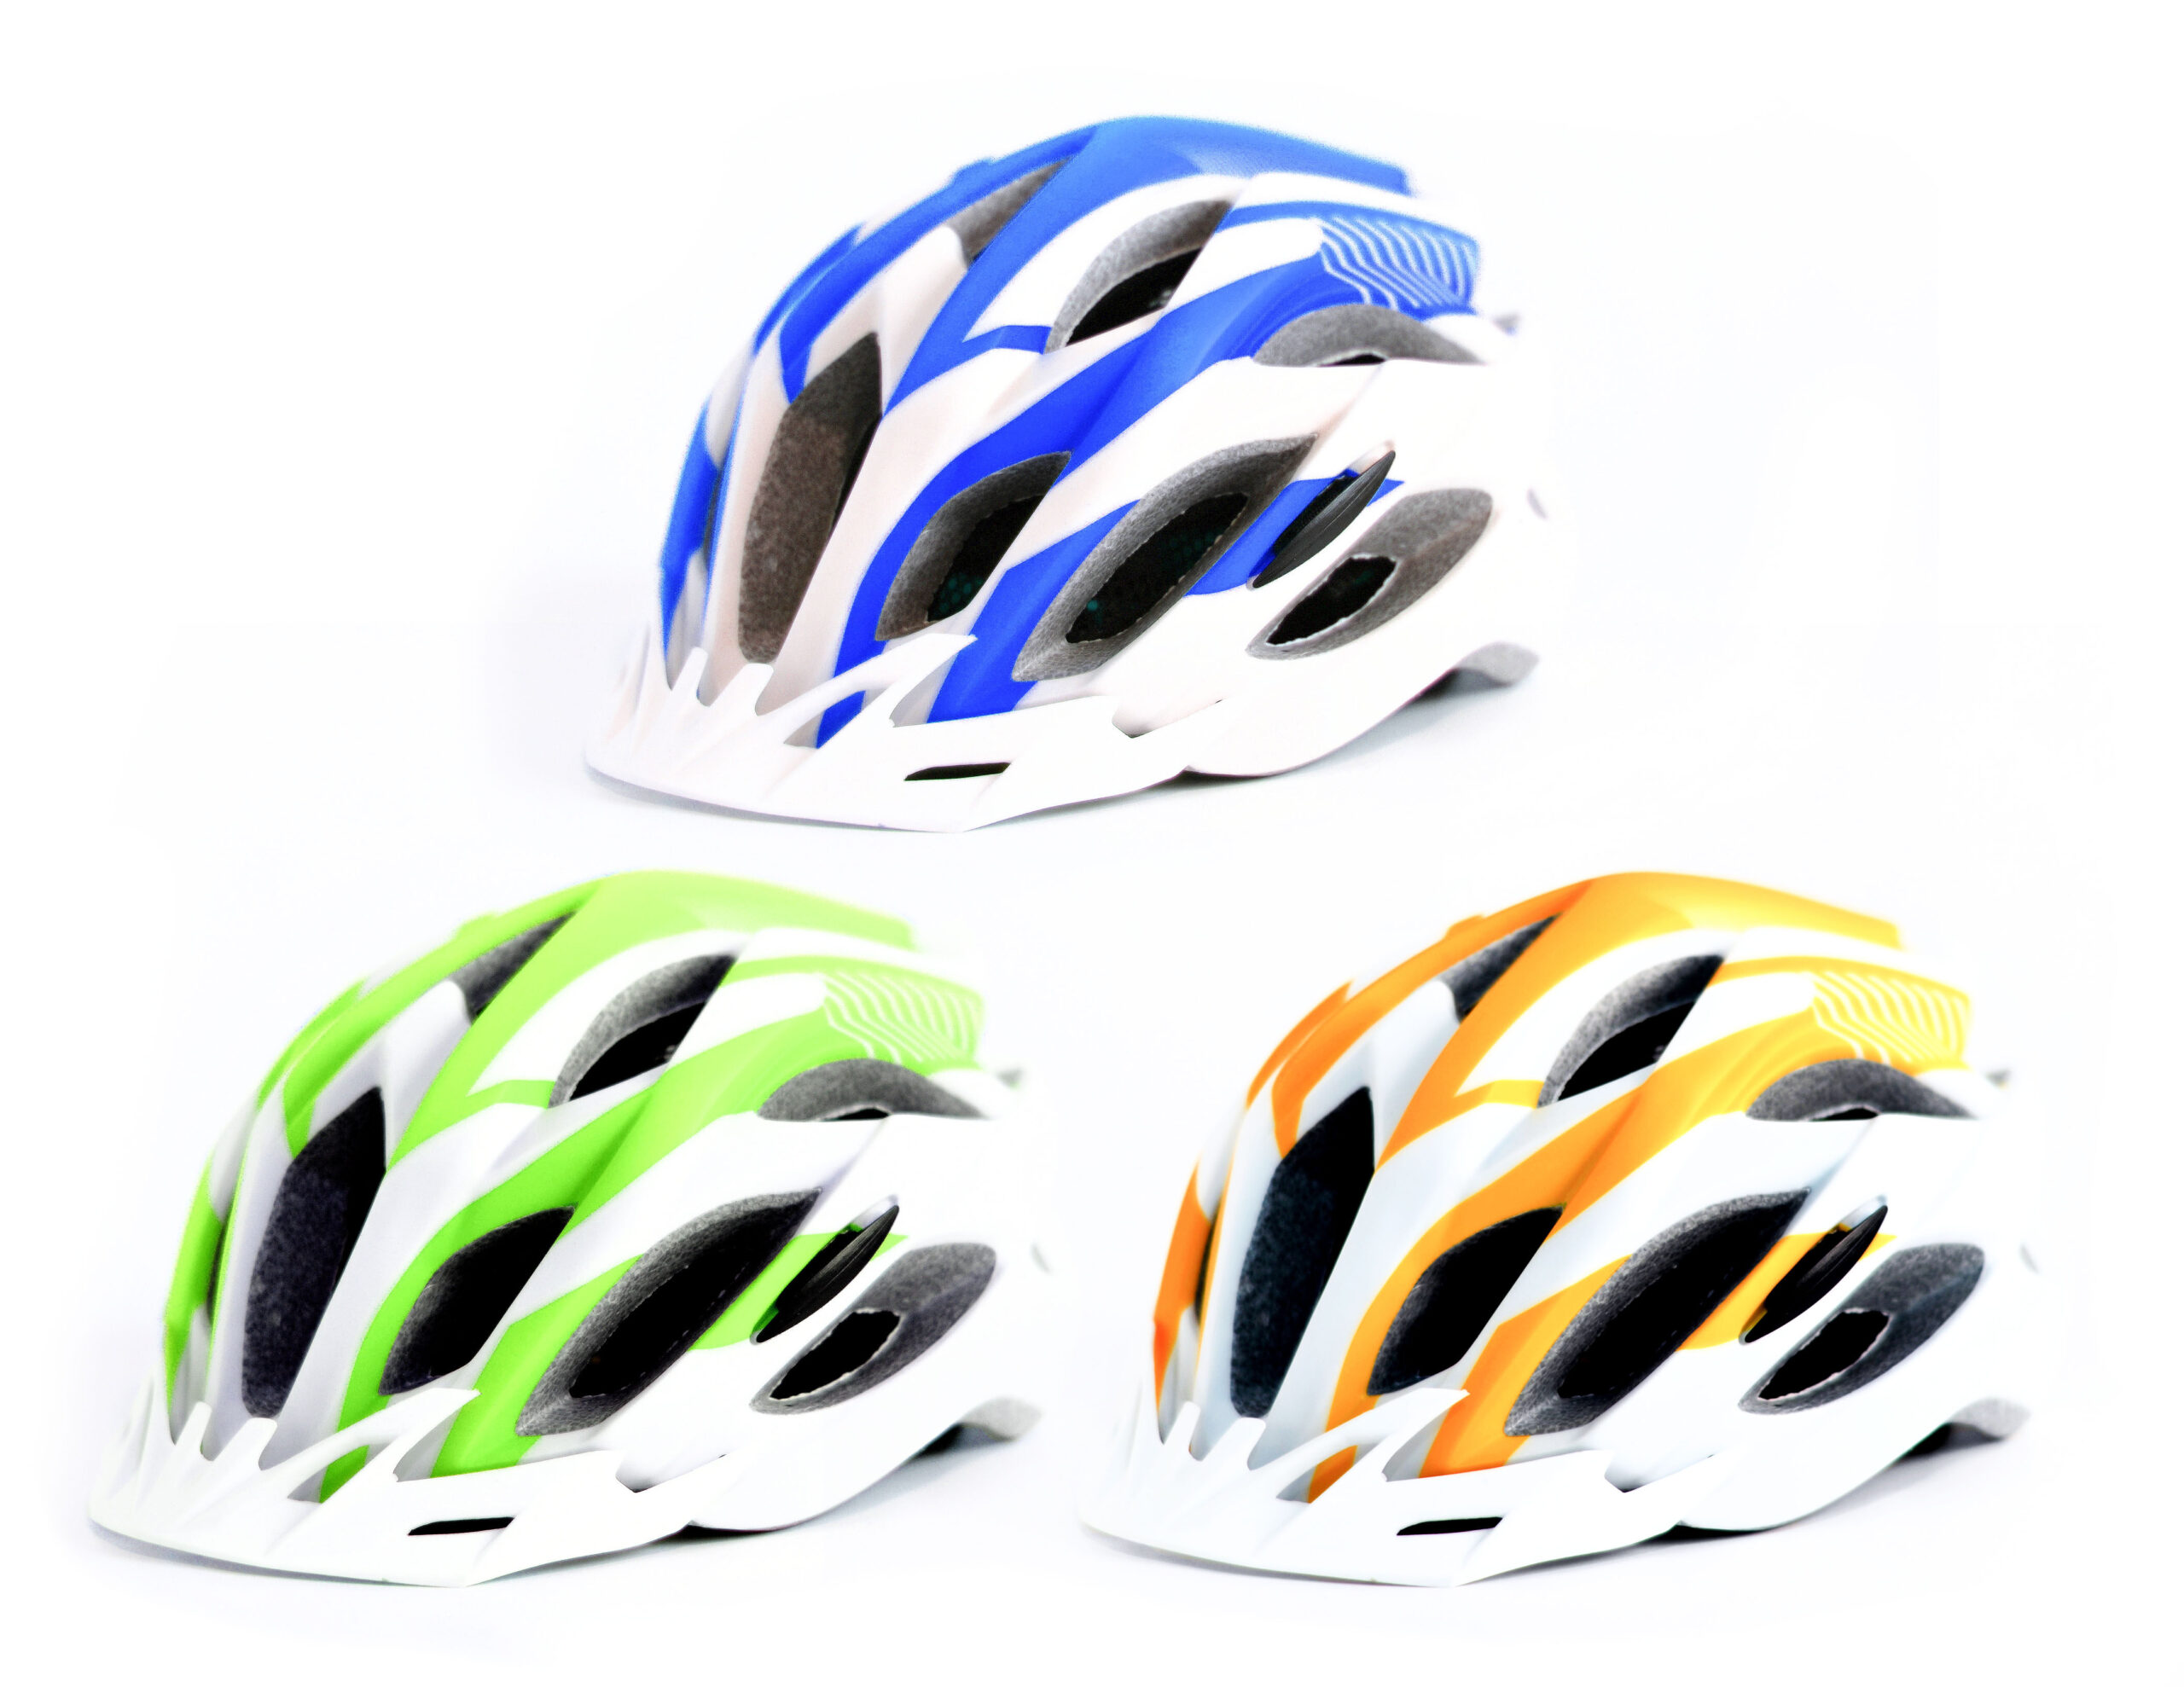  Go Knight Commuter - Casco de bicicleta para adultos con luz -  Casco de bicicleta LED certificado por la CPSC - Casco de bicicleta para  mujer para adultos - Casco ligero